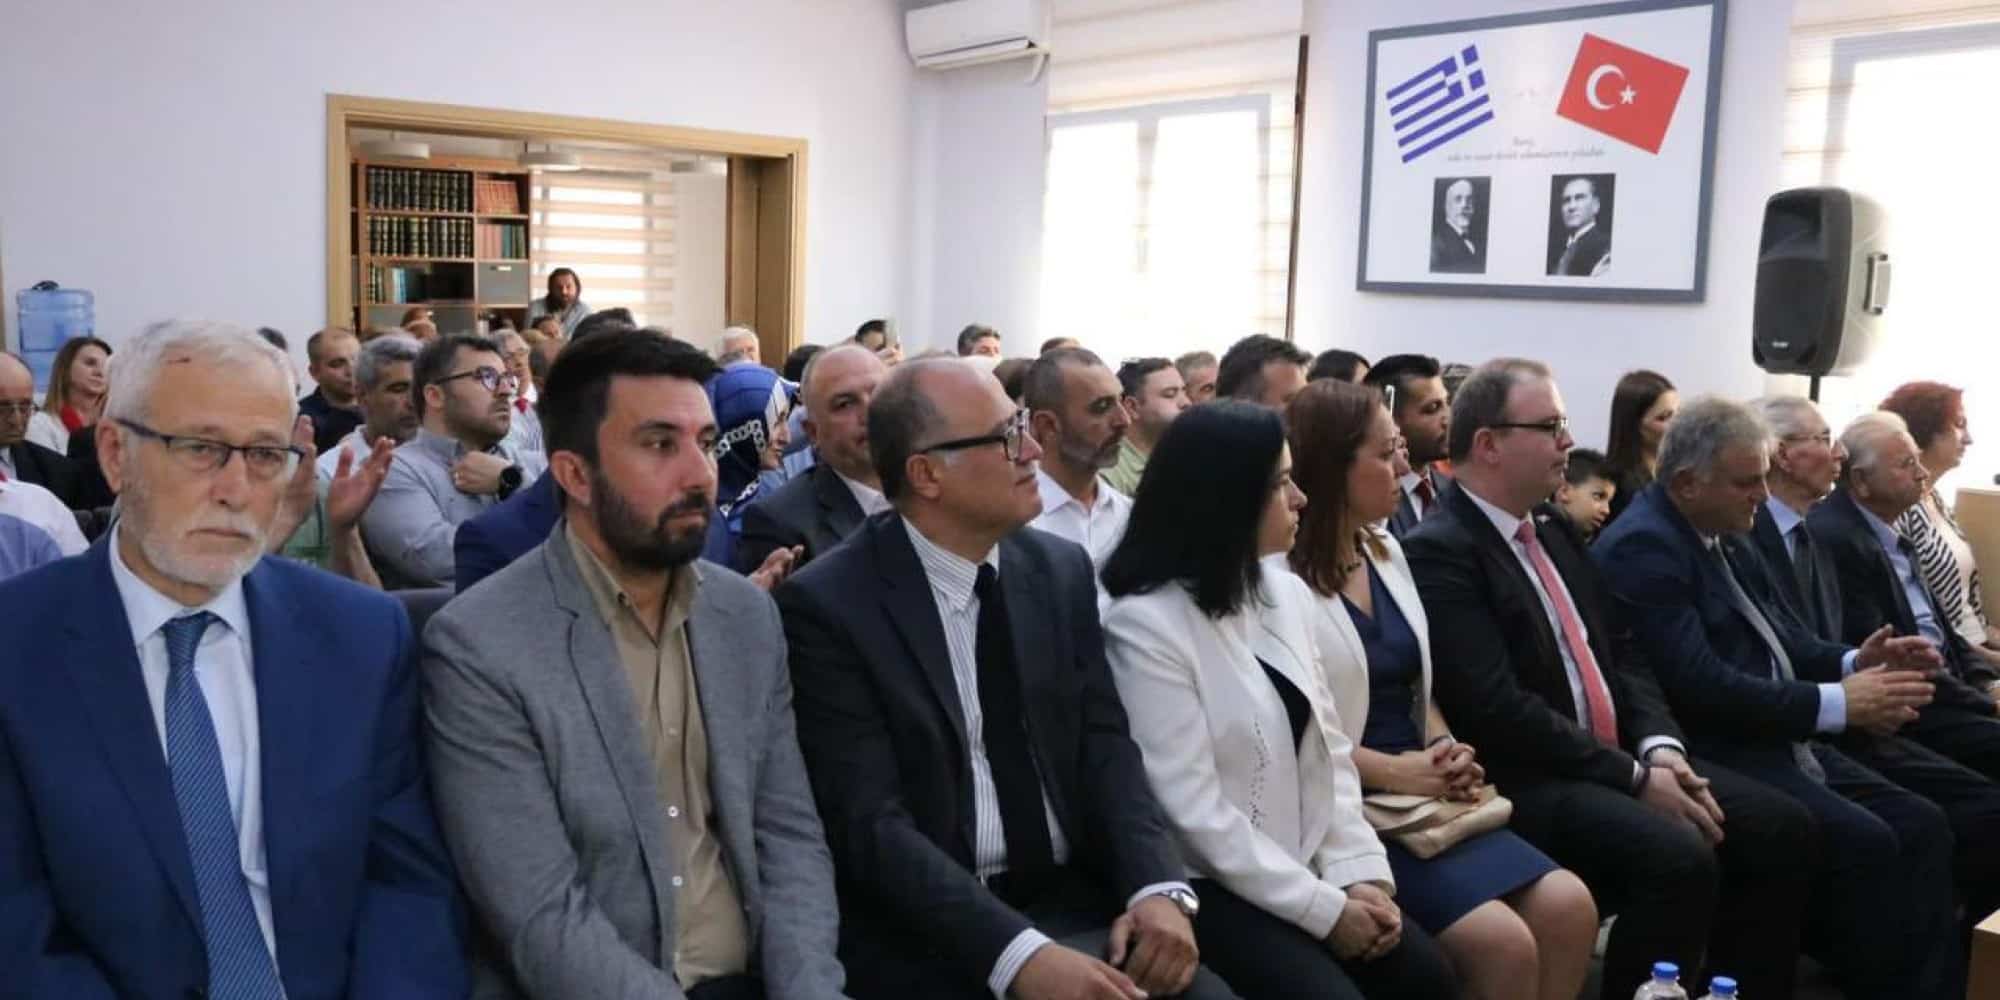 Ο υποψήφιος βουλευτής του ΣΥΡΙΖΑ, Οζγκιούρ Φερχάτ σε εκδήλωση της «Ένωσης Τούρκων Δασκάλων Δυτικής Θράκης»